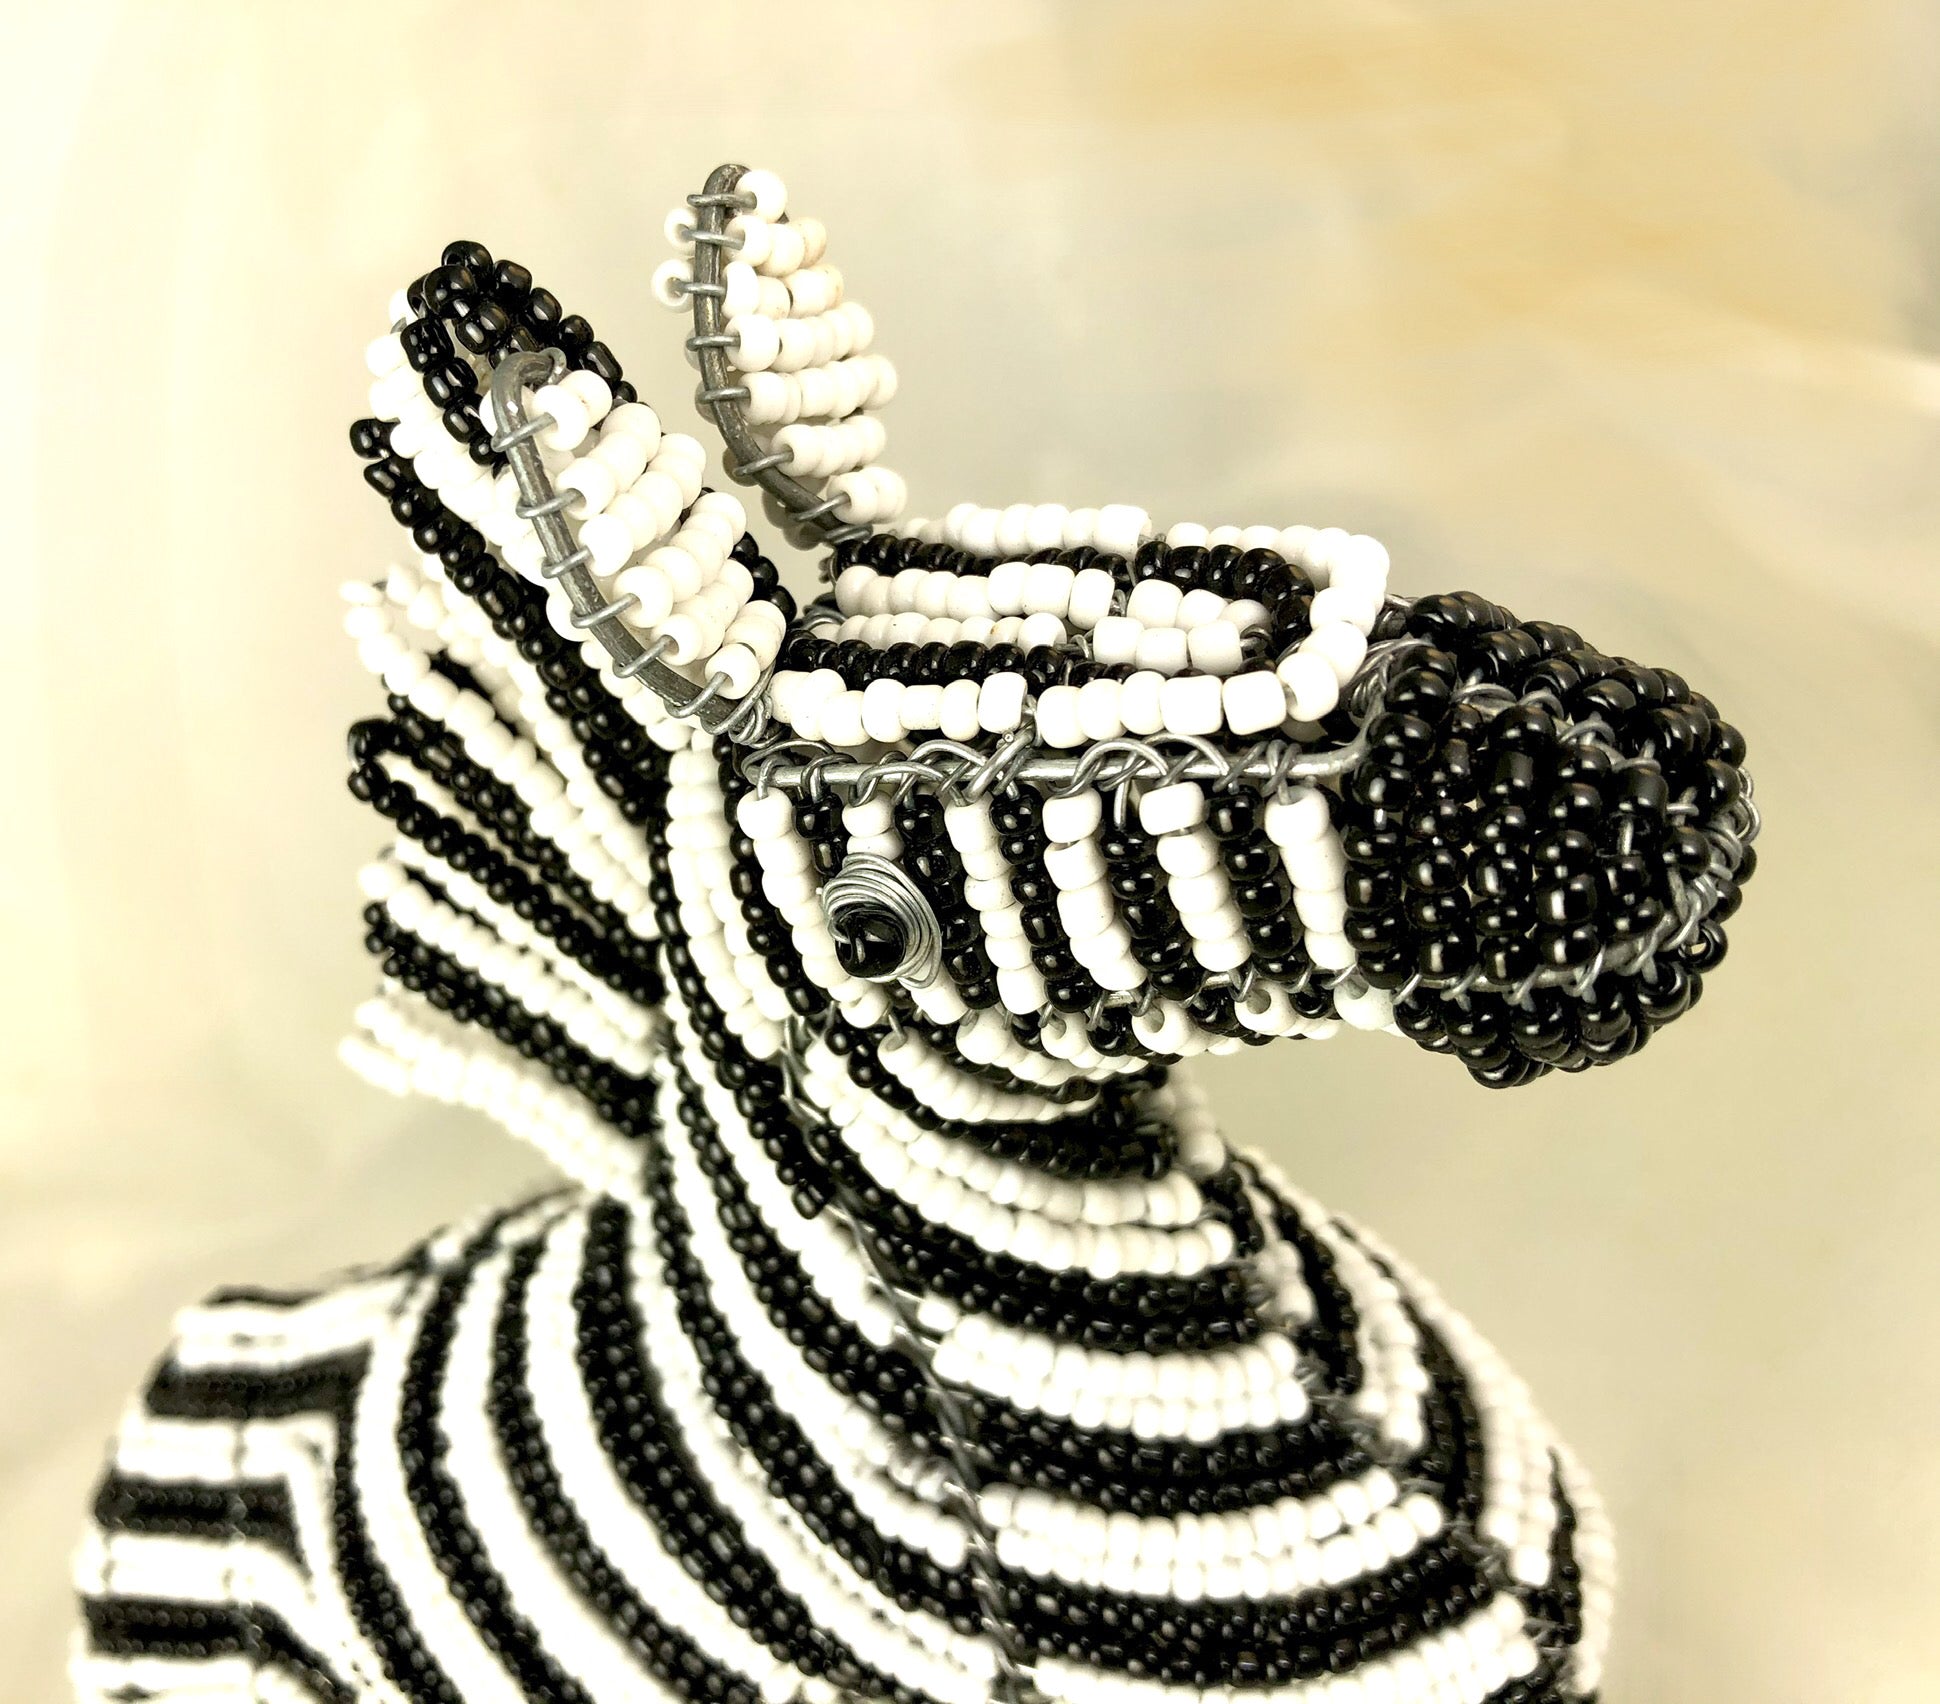 South African Zebra fair trade beaded art!